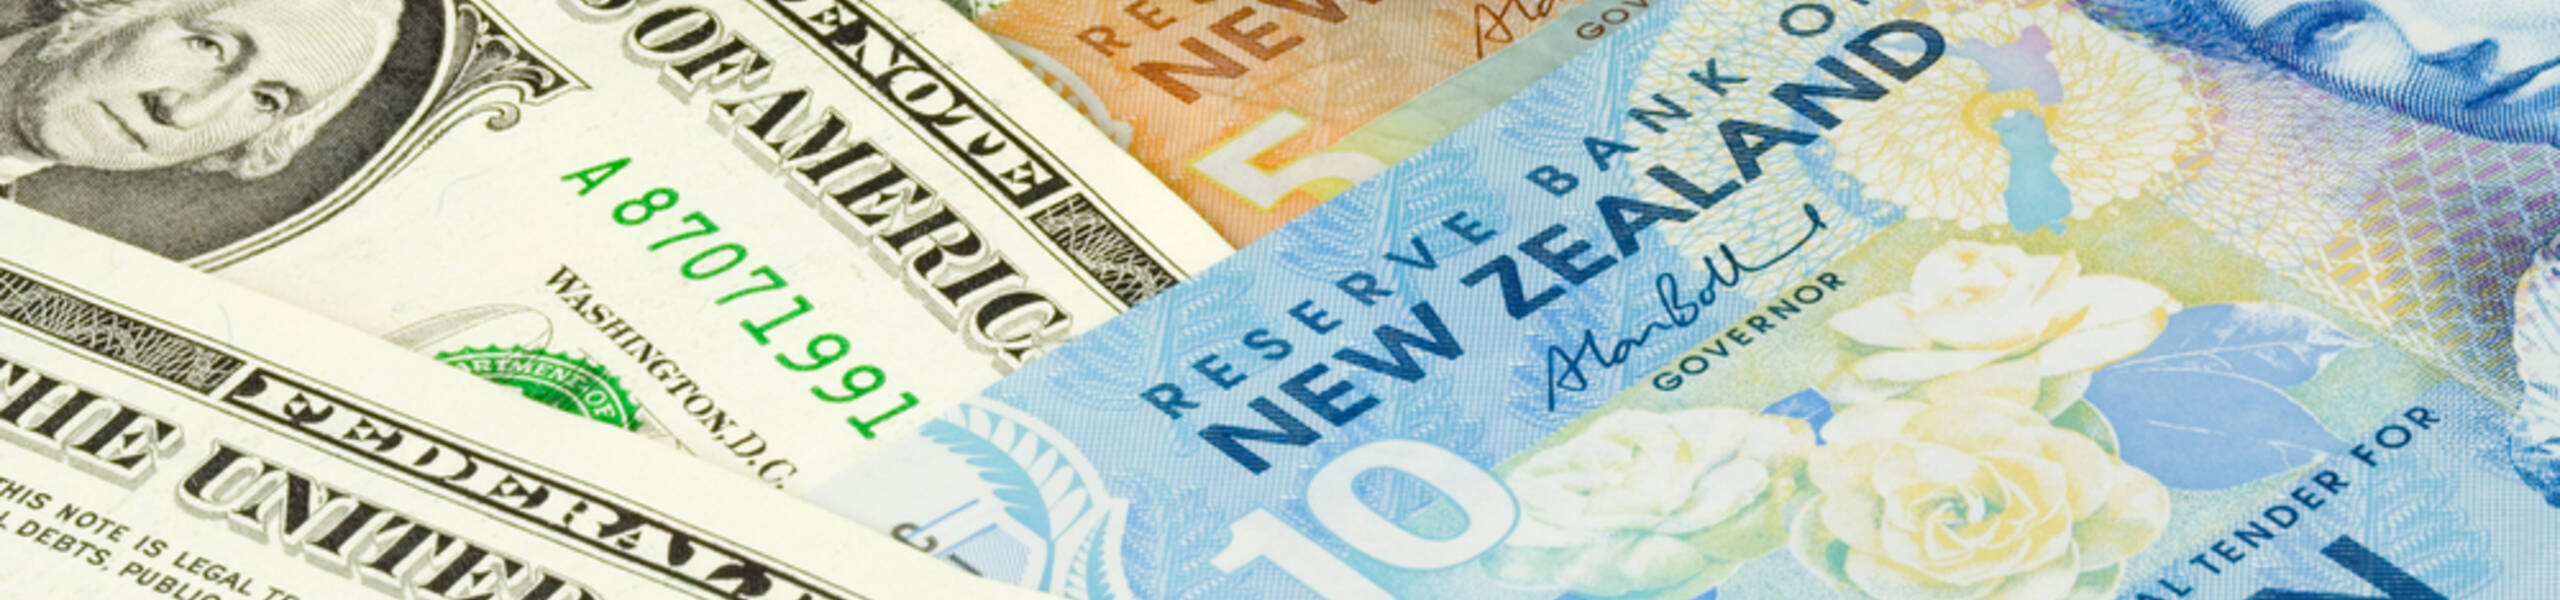 Kế hoạch giao dịch cặp ngoại tệ NZDUSD ngày 03/04/2019 